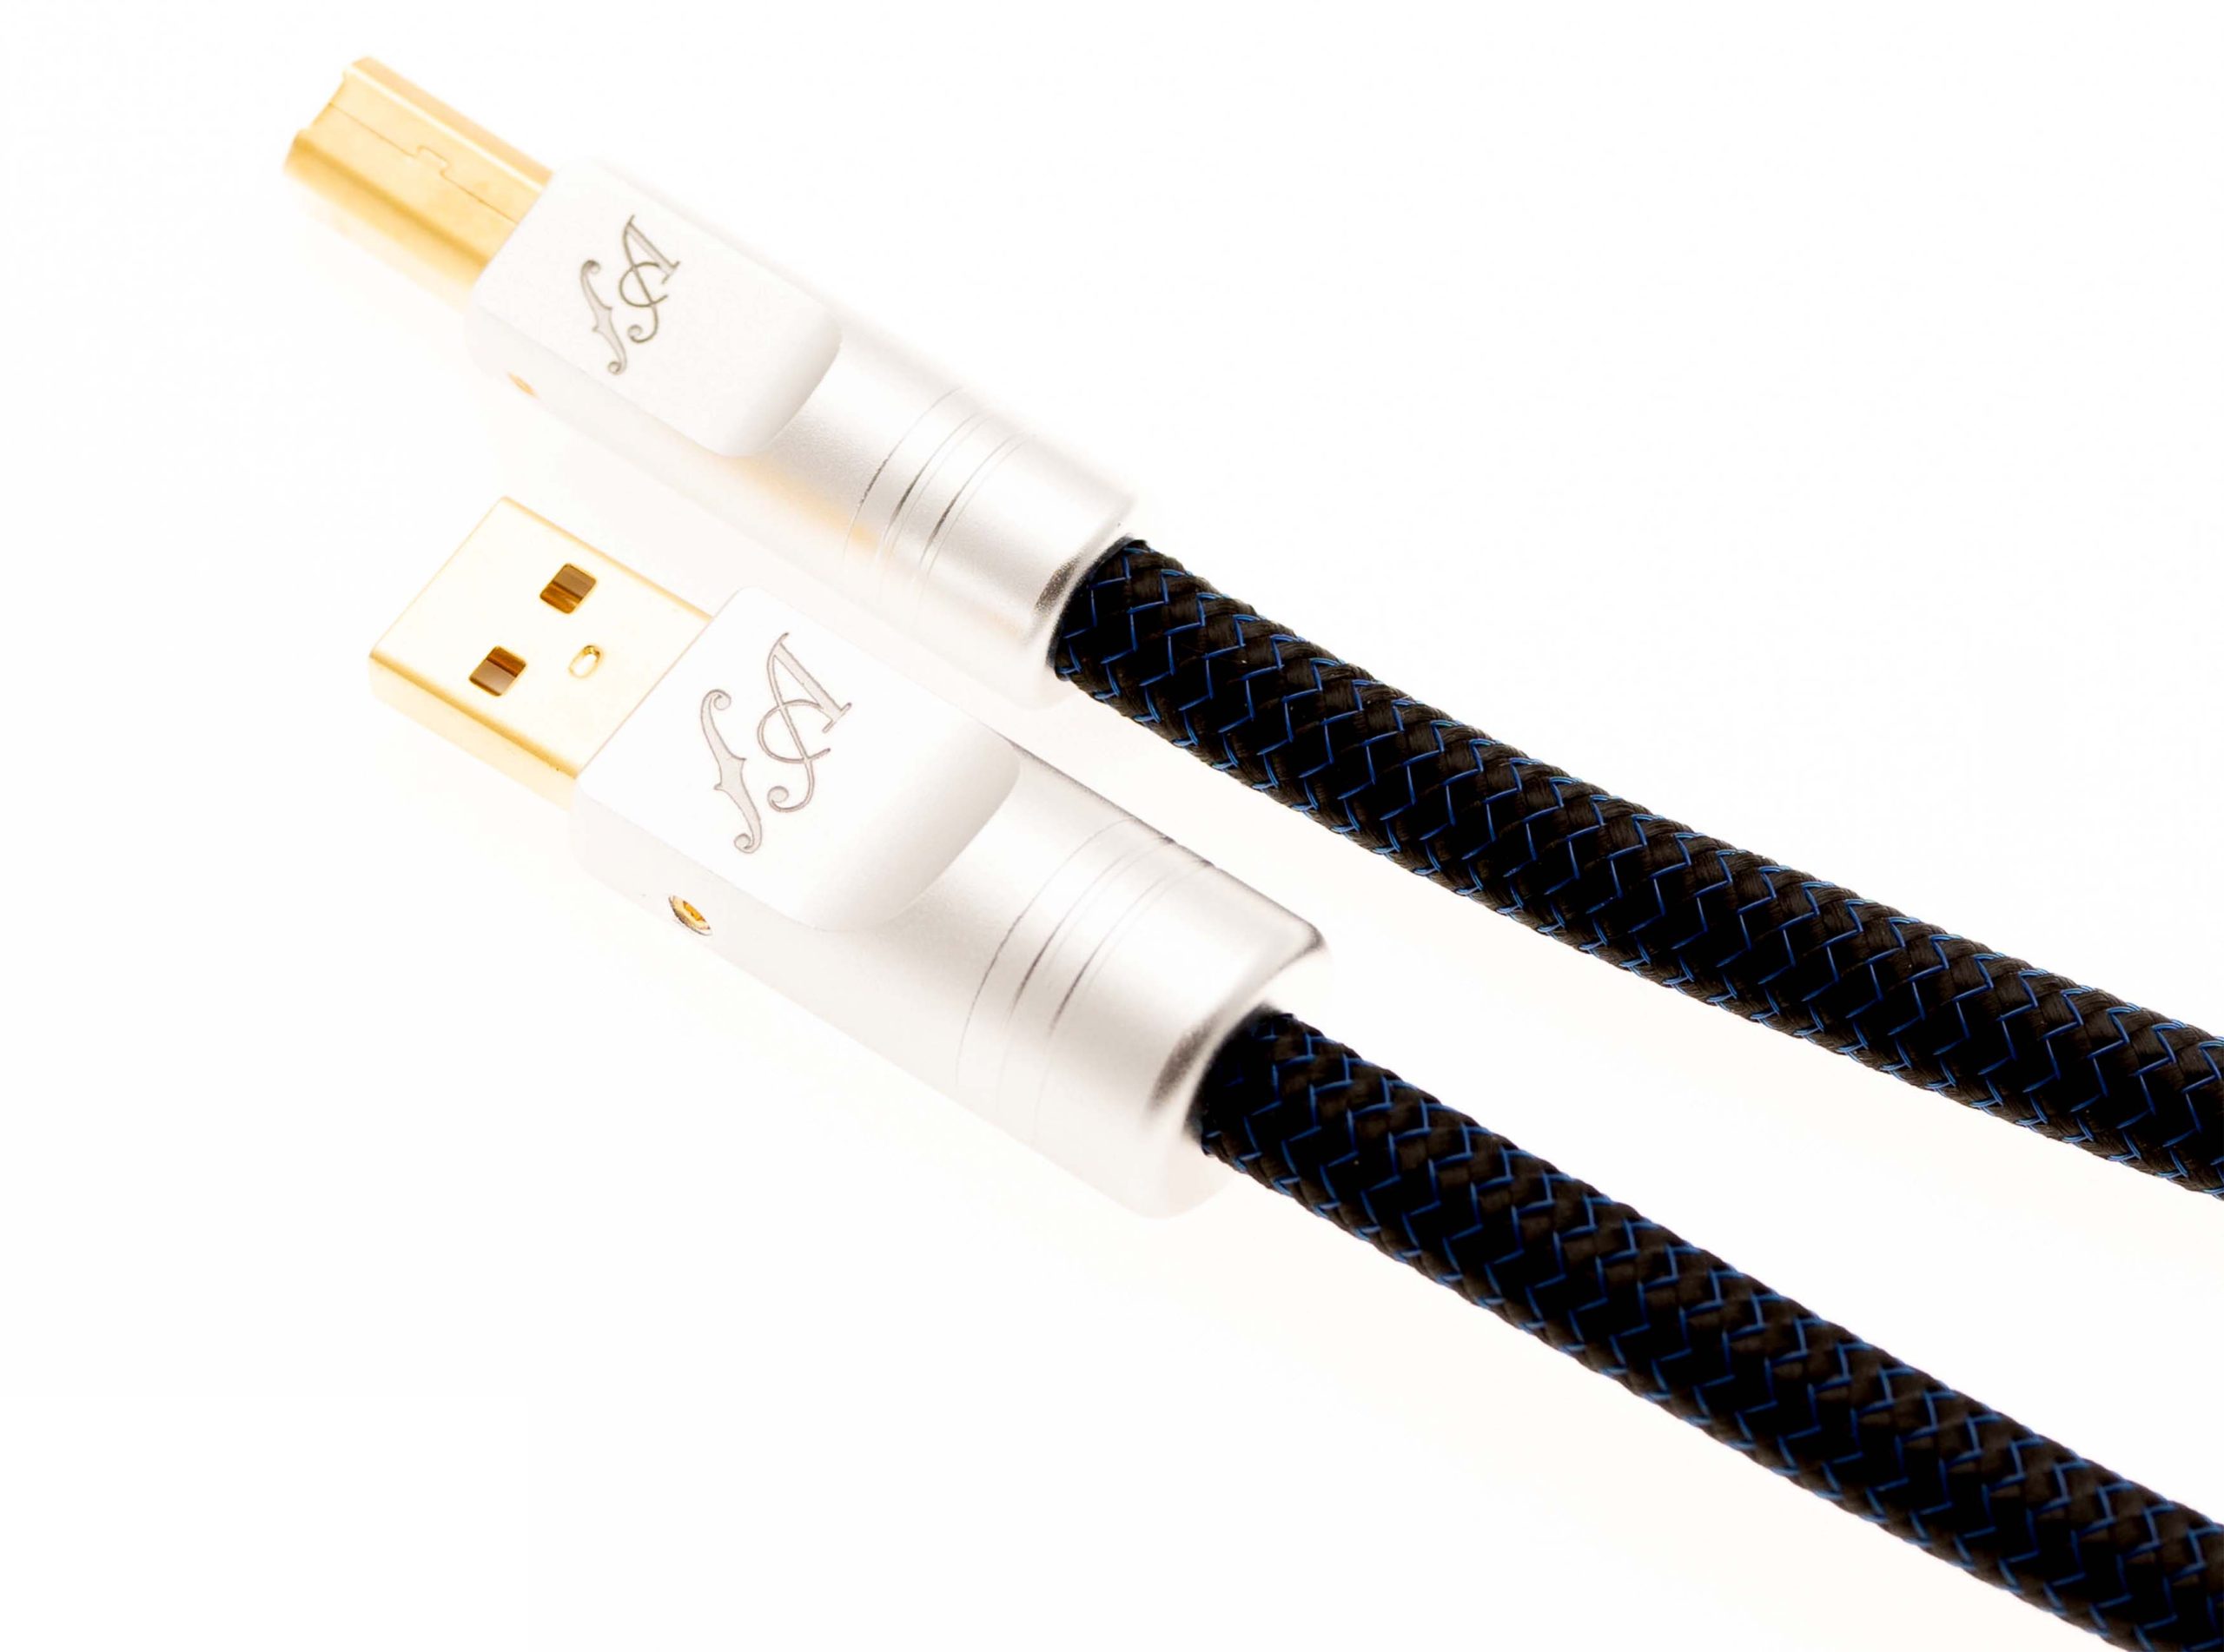 Legato USB Cable